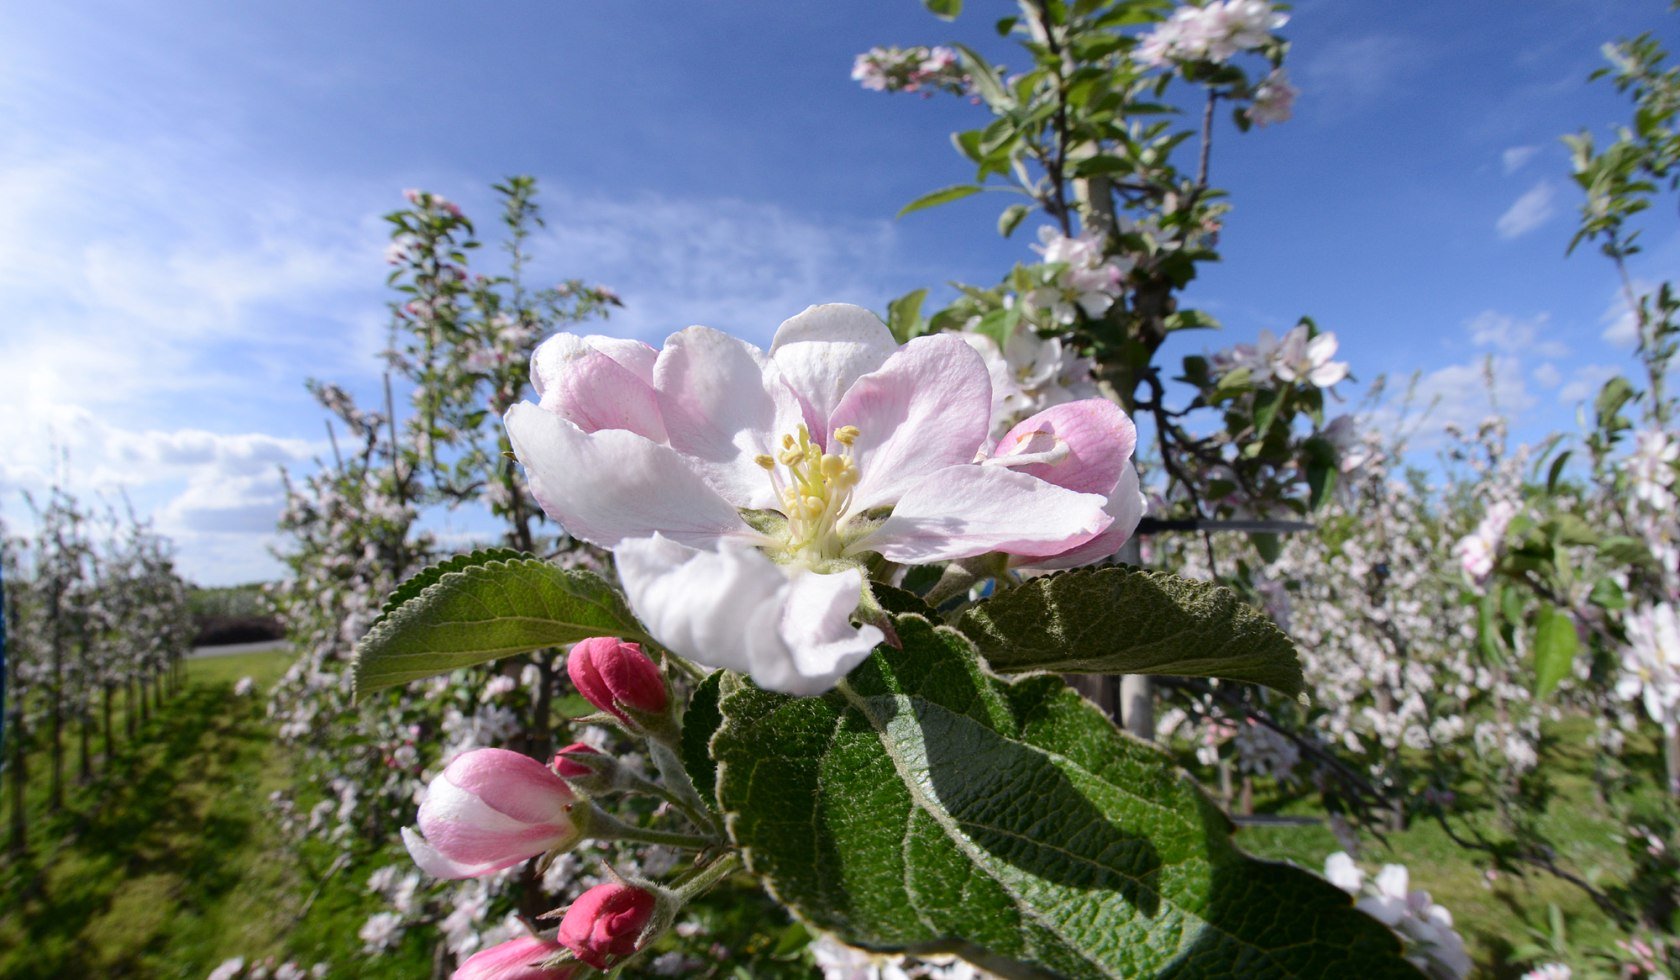 Apfelblüte auf einer Plantage im Alten Land, © Tourismusverband LK Stade/Elbe e.V./ Martin Elsen